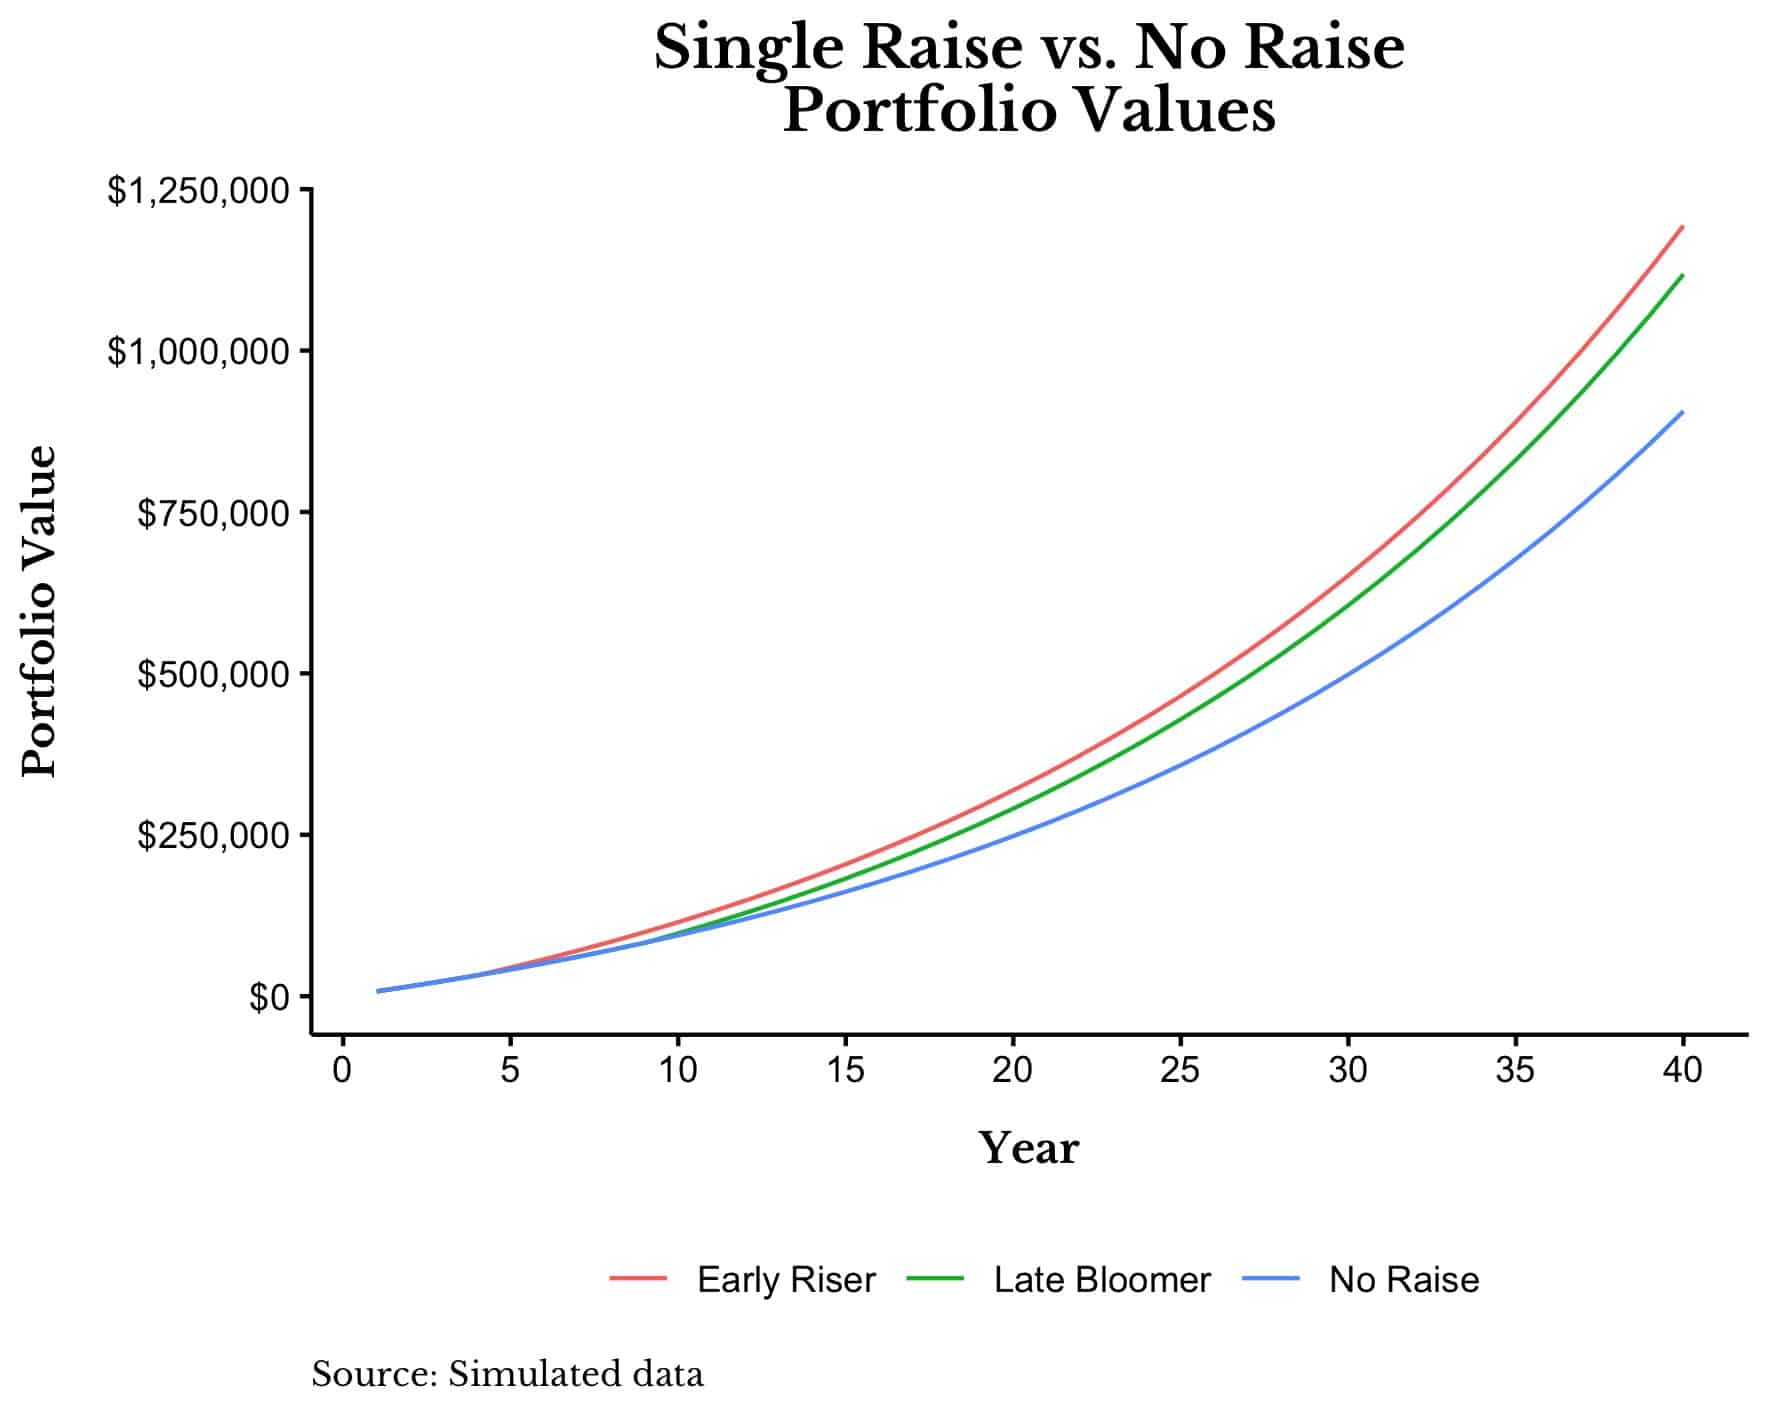 Single raise versus no raise impact on portfolio value